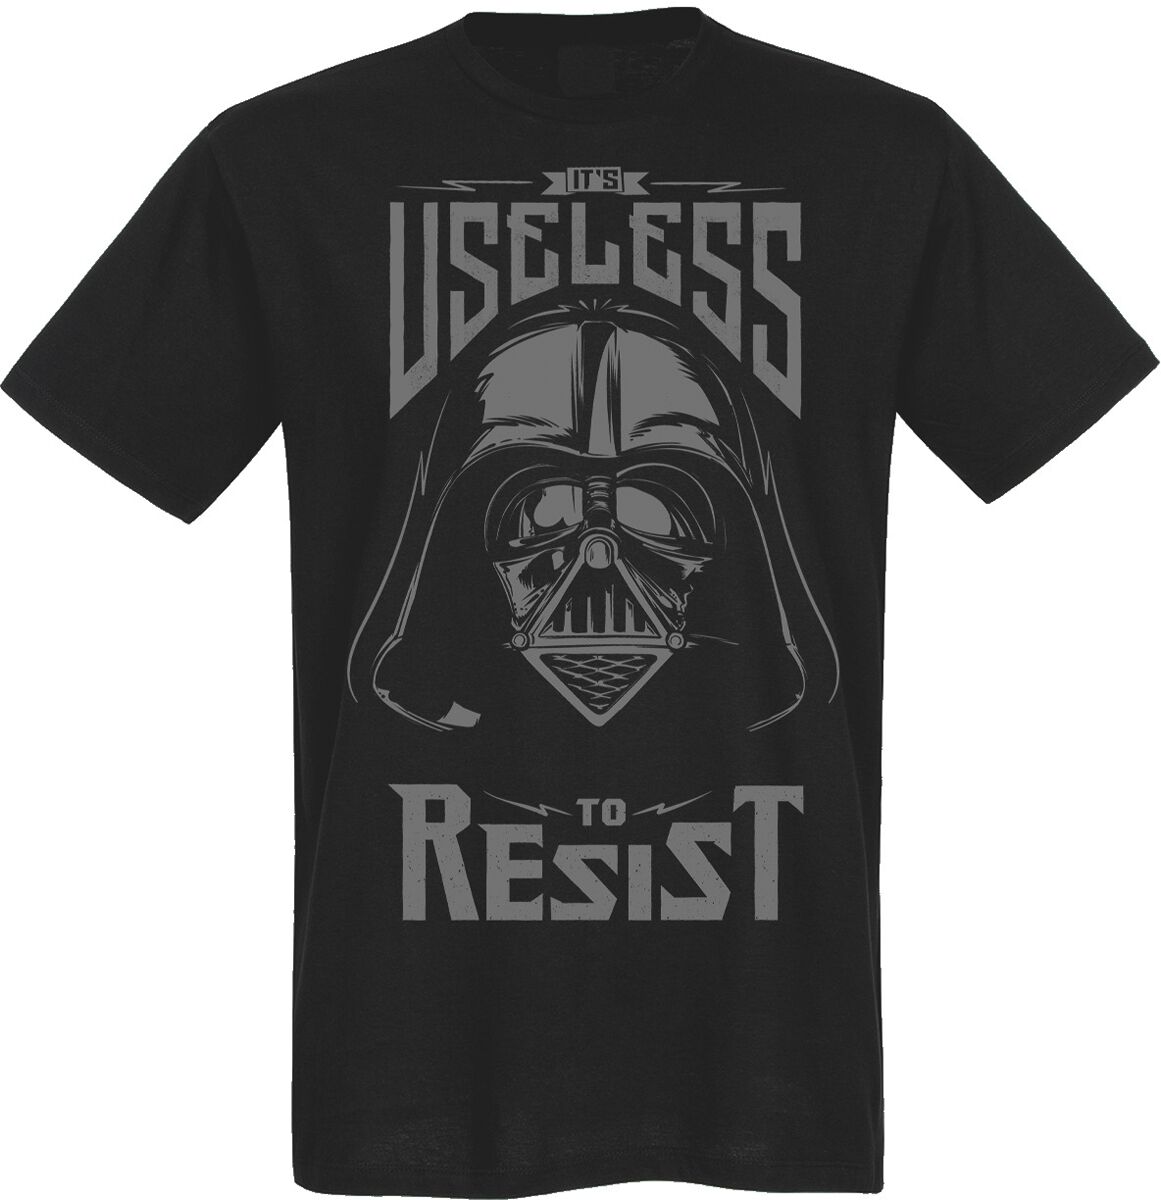 Star Wars - Disney T-Shirt - Useless To Resist - M bis 5XL - für Männer - Größe 5XL - schwarz  - Lizenzierter Fanartikel